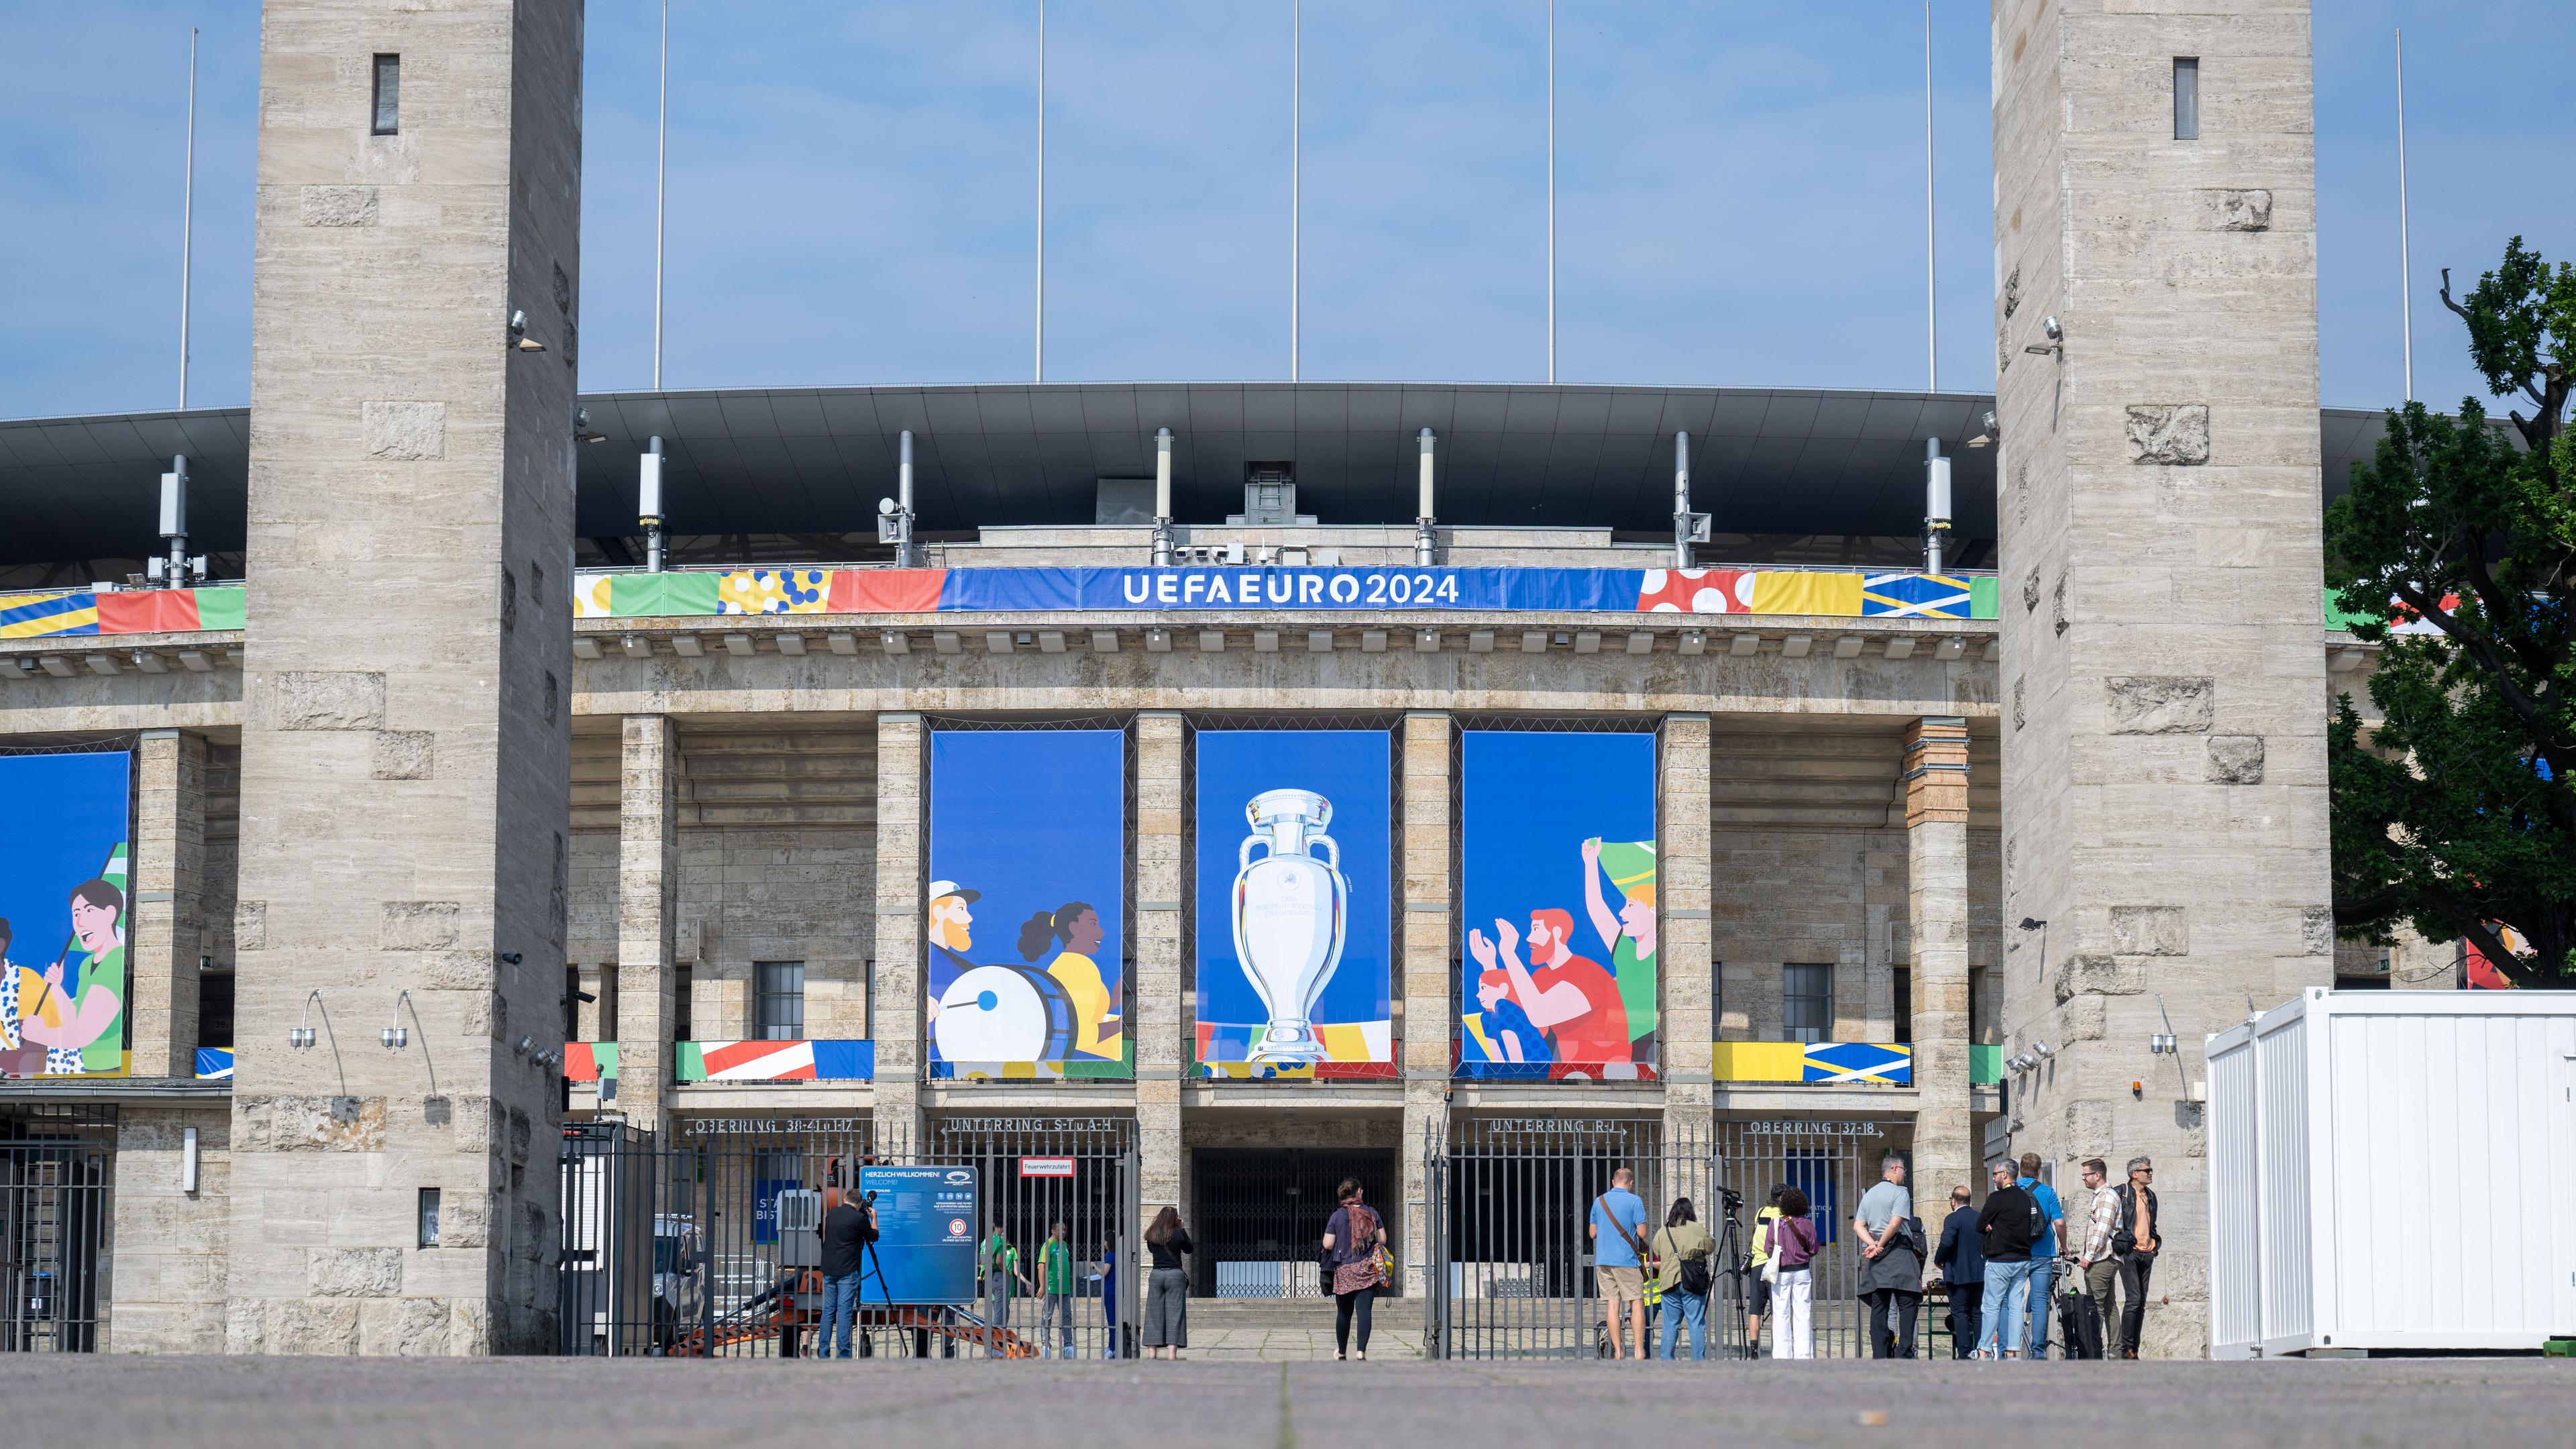 Das Olympiastadion in Berlin geschmückt mit blauen Bannern und dem Logo der Fußball Europameisterschaft 2024.